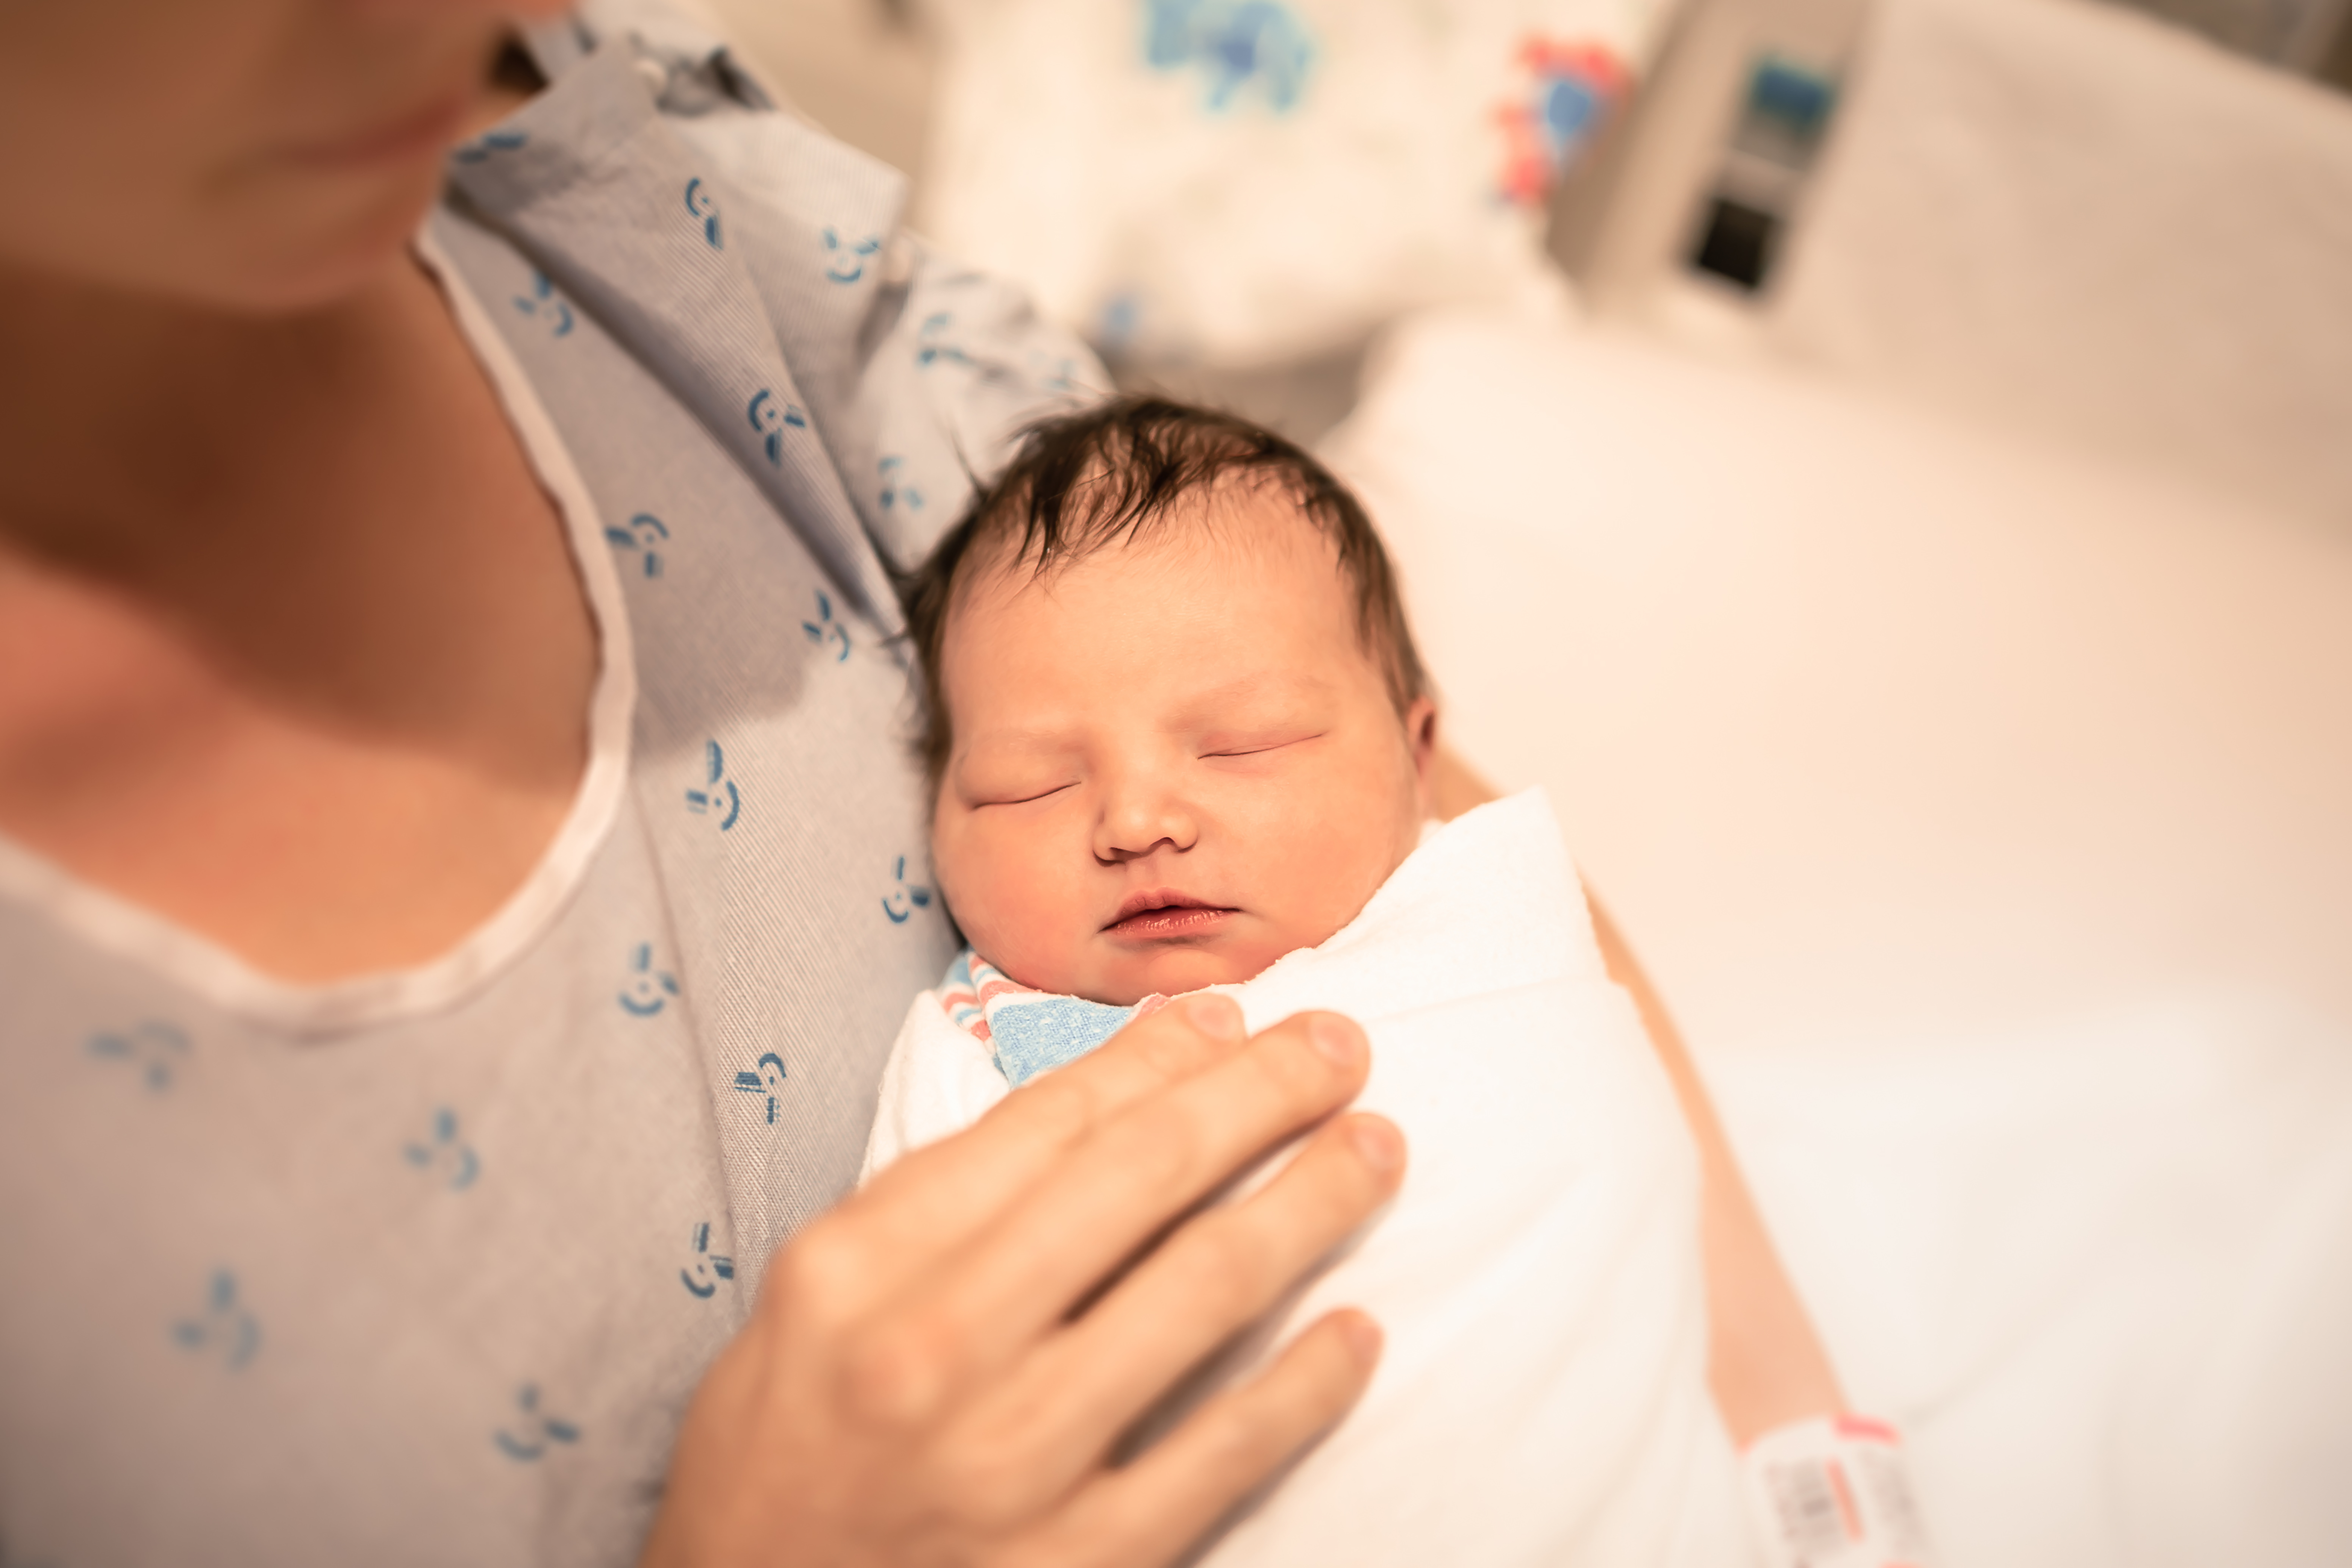 Une mère tenant son nouveau-né | Source : Shutterstock